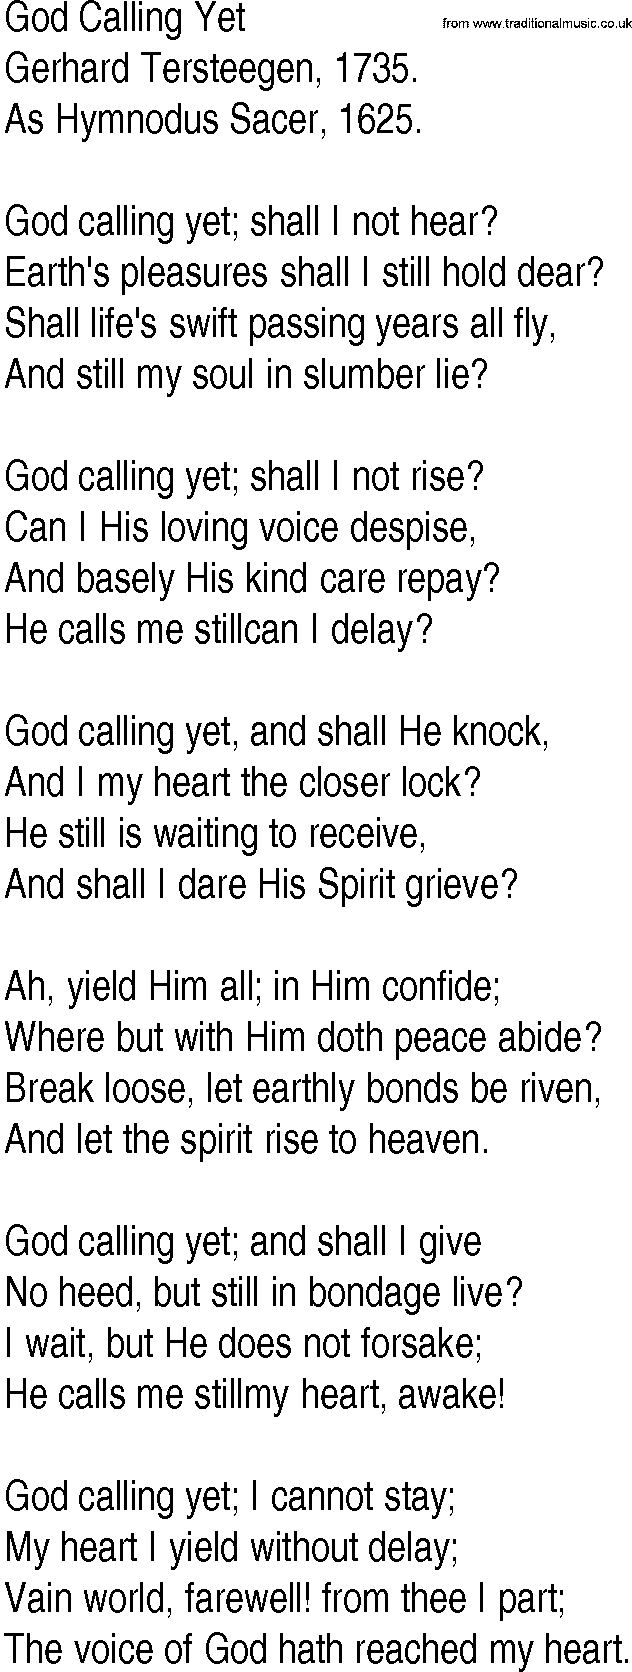 Hymn and Gospel Song: God Calling Yet by Gerhard Tersteegen lyrics